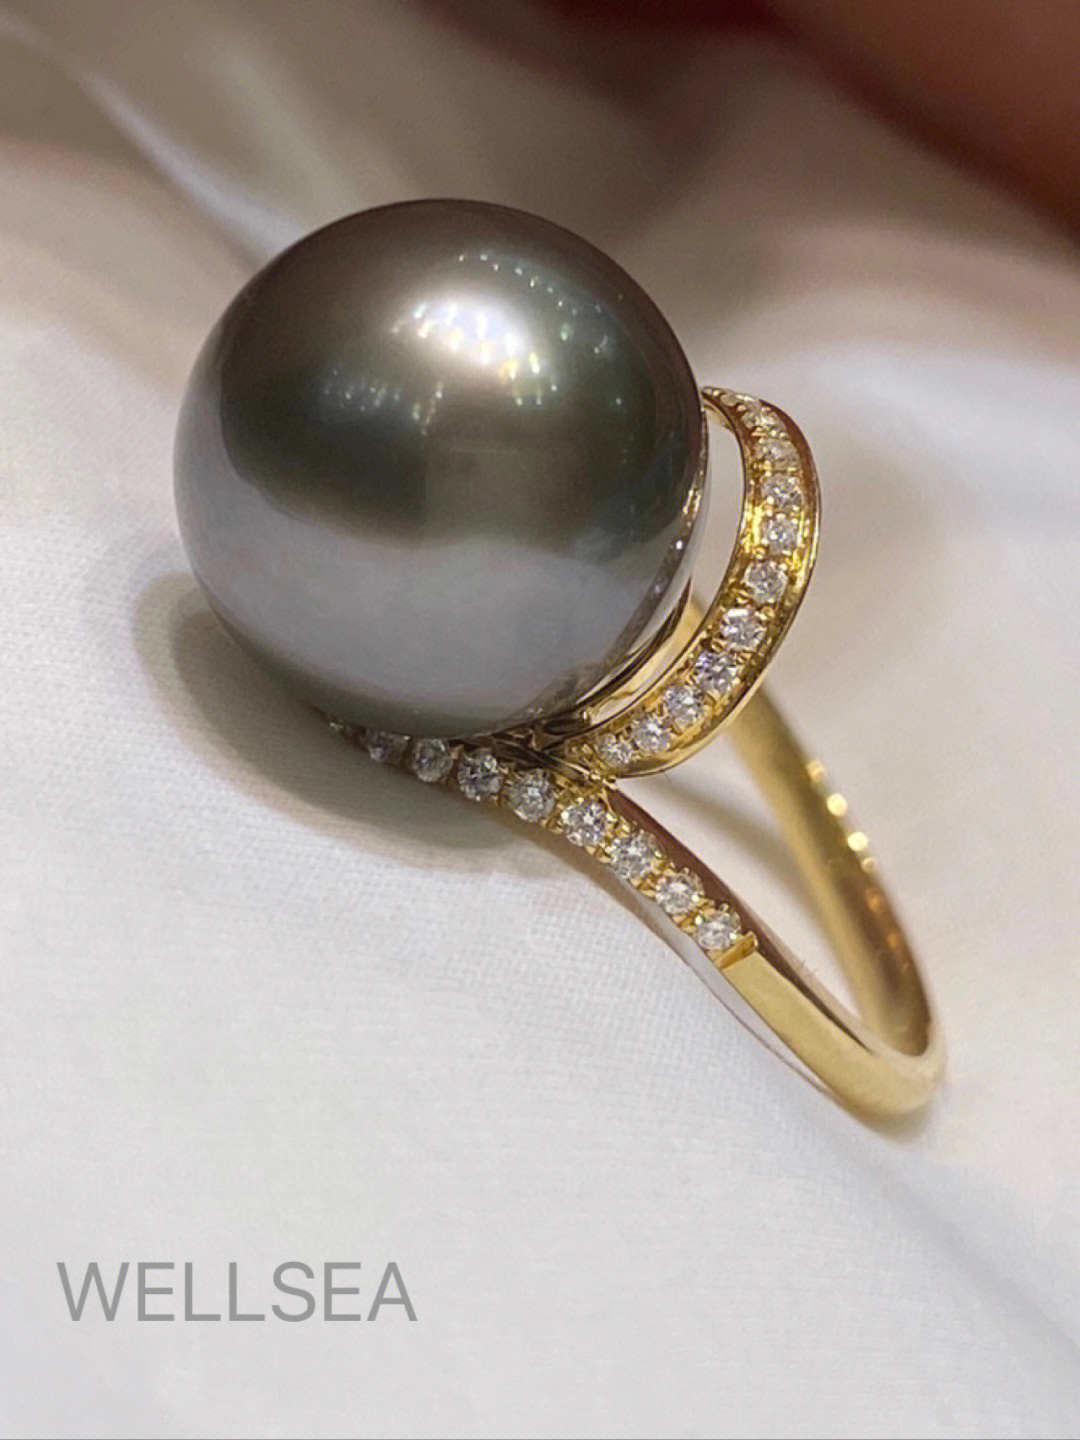 流线型设计优美柔和大溪地珍珠戒指18k金,钻石镶请关注我@wellsea咨询